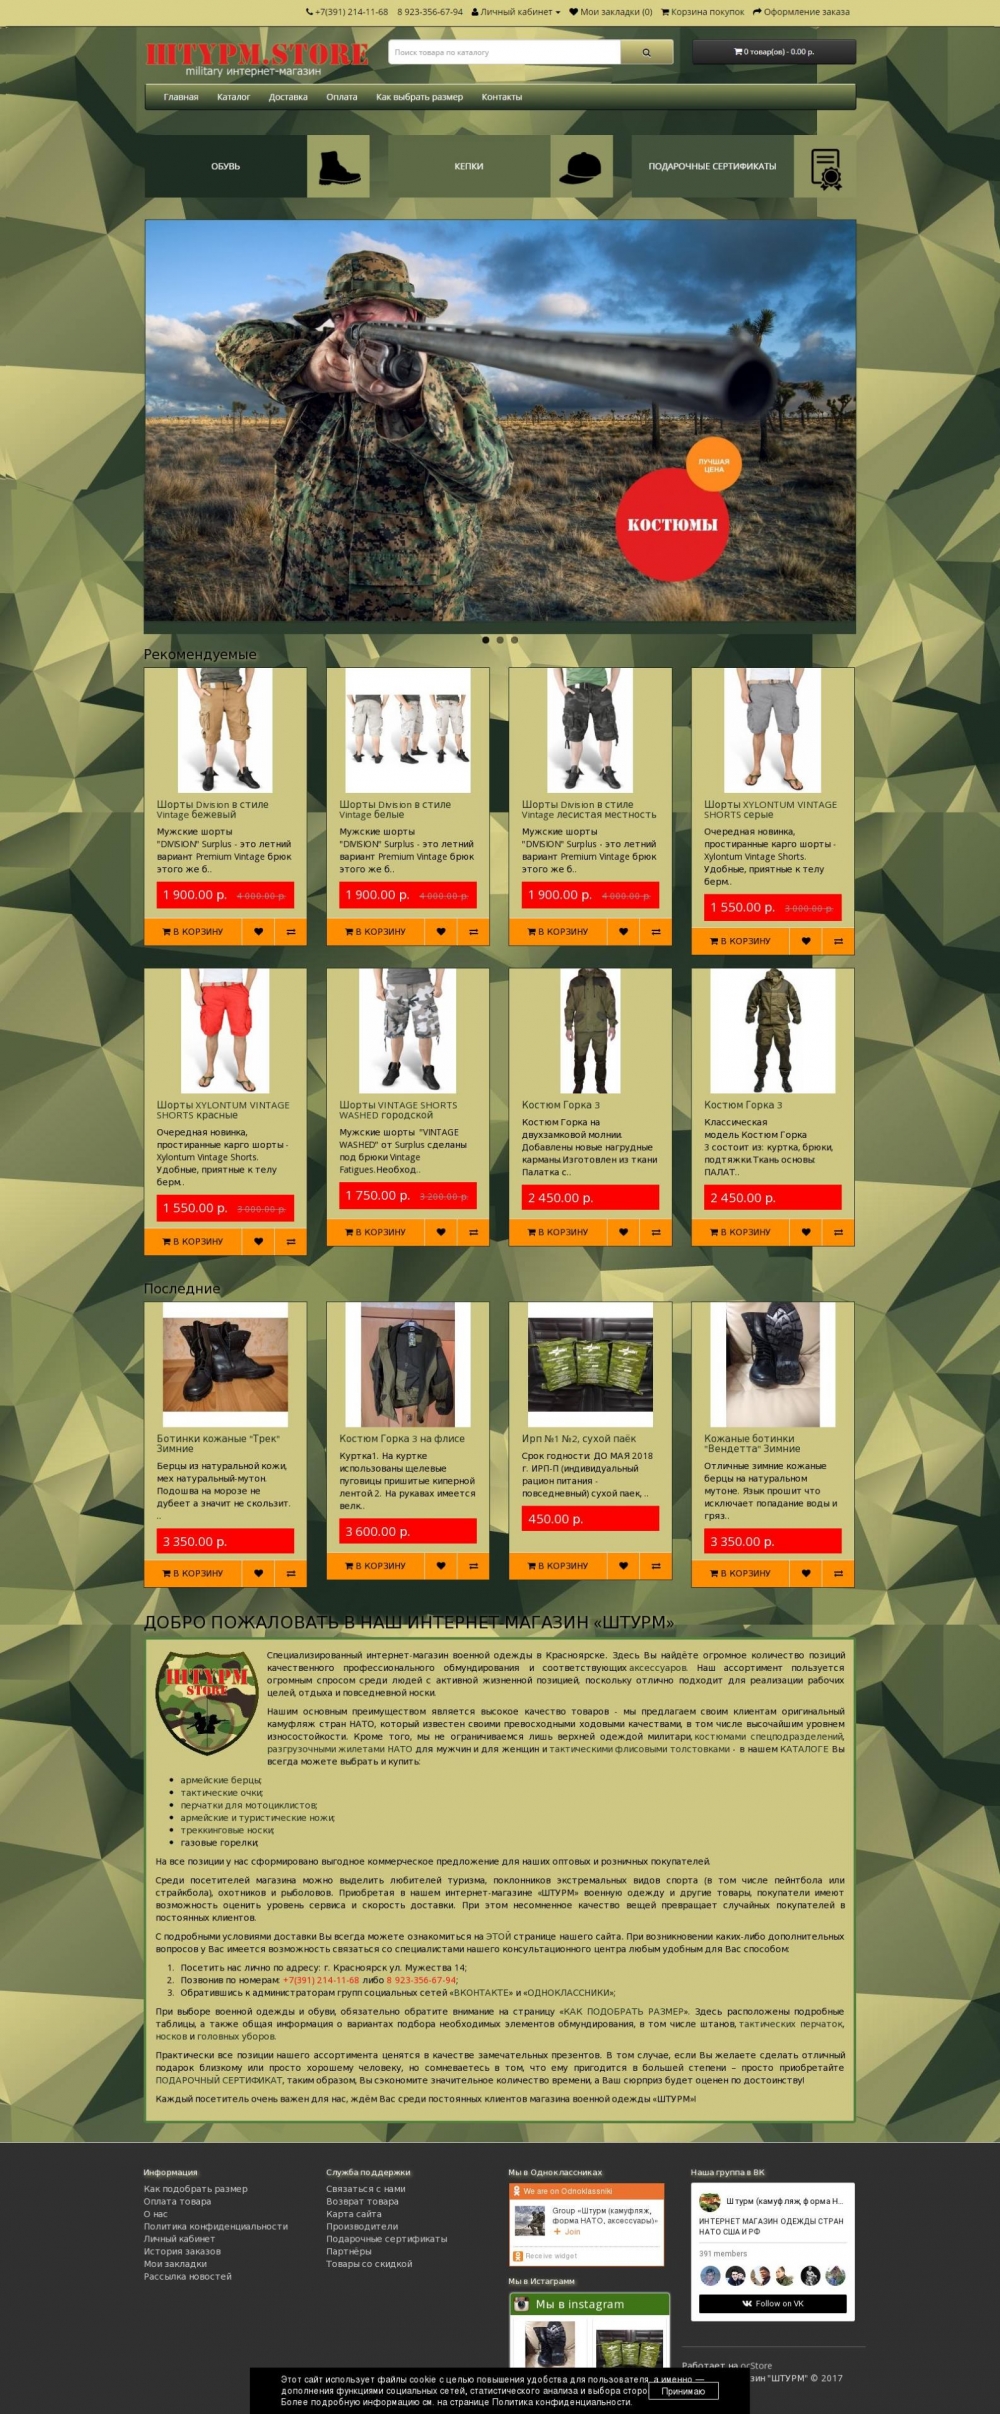 Создание интернет-магазина военной одежды